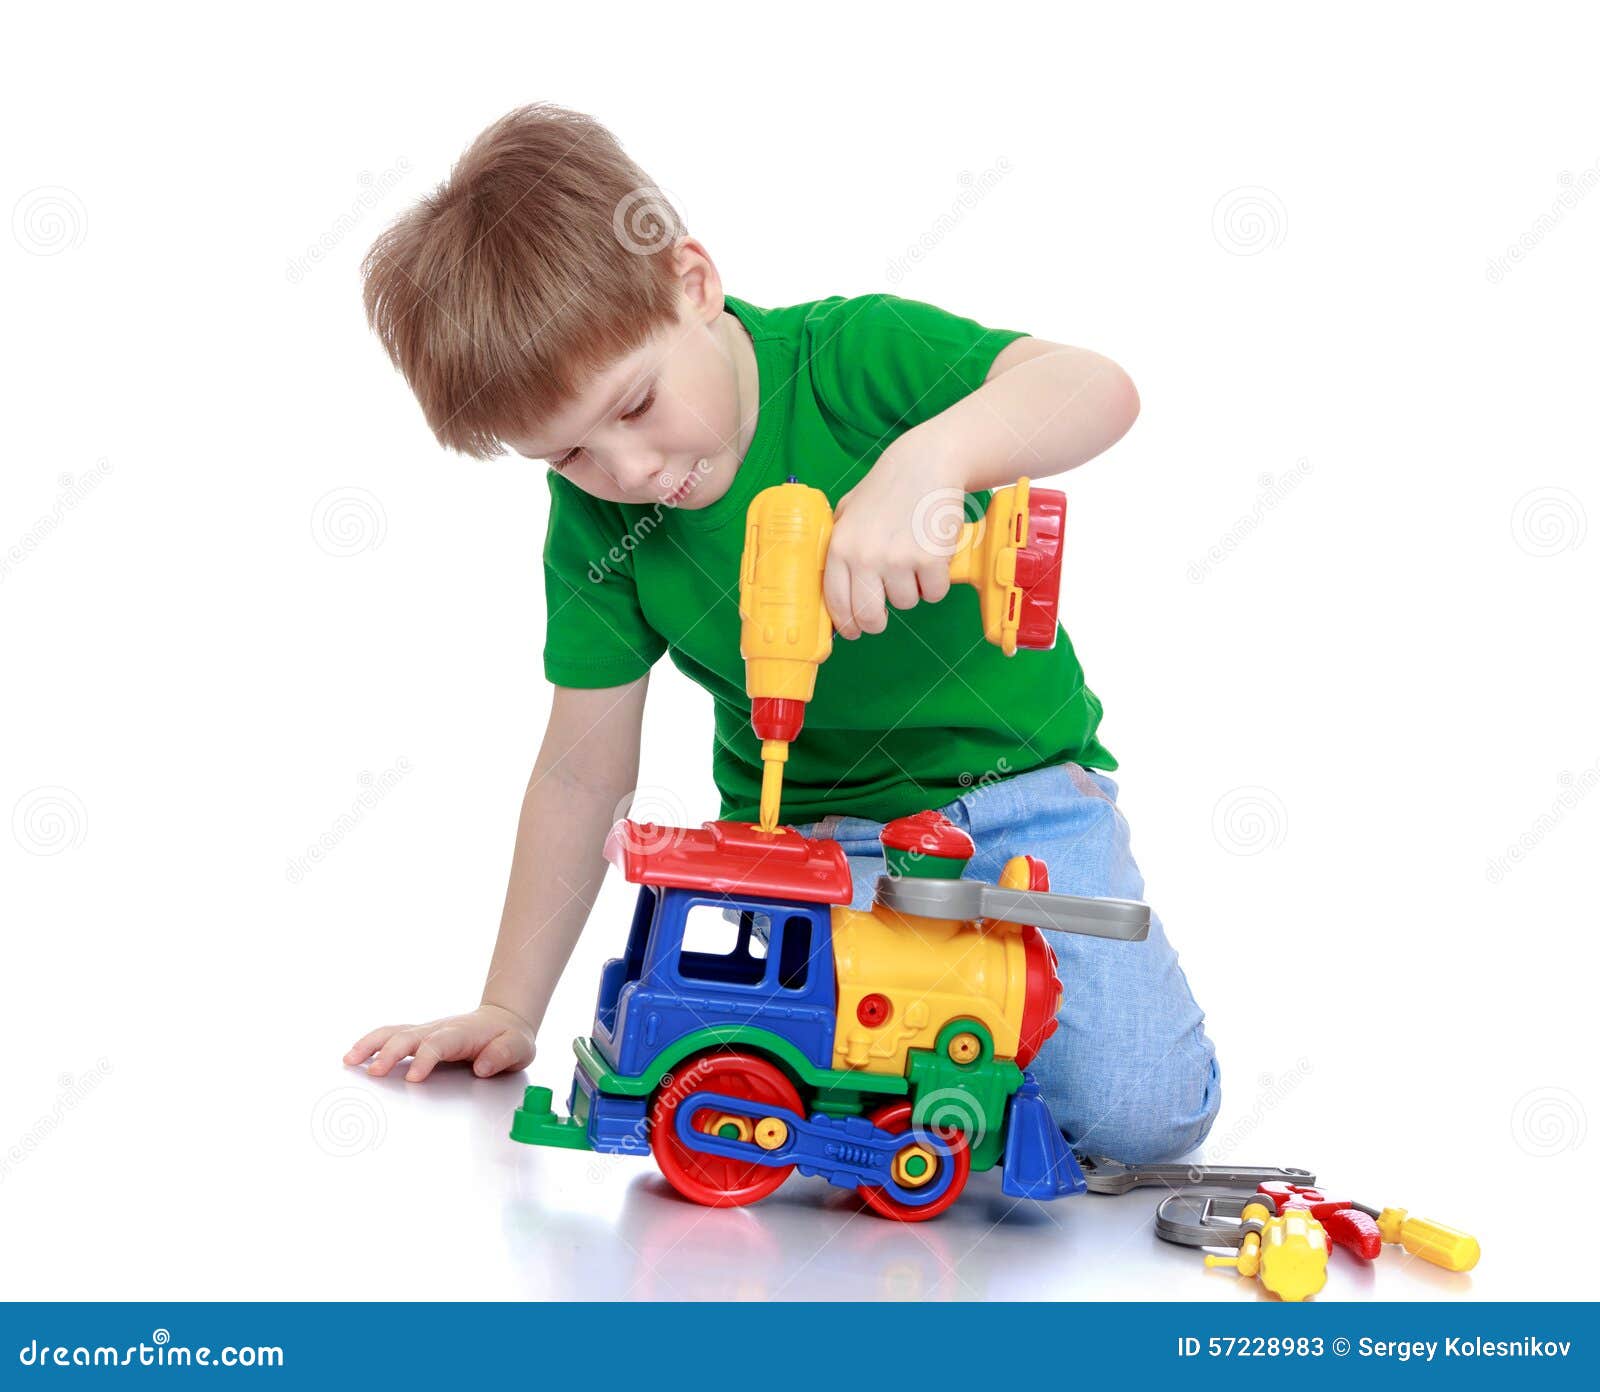 Игрушки сломаны замасленный фартук воспитанный юноша. Машинки для мальчиков. Дети чинят игрушки. Мальчик чинит игрушку. Поломанные игрушки.